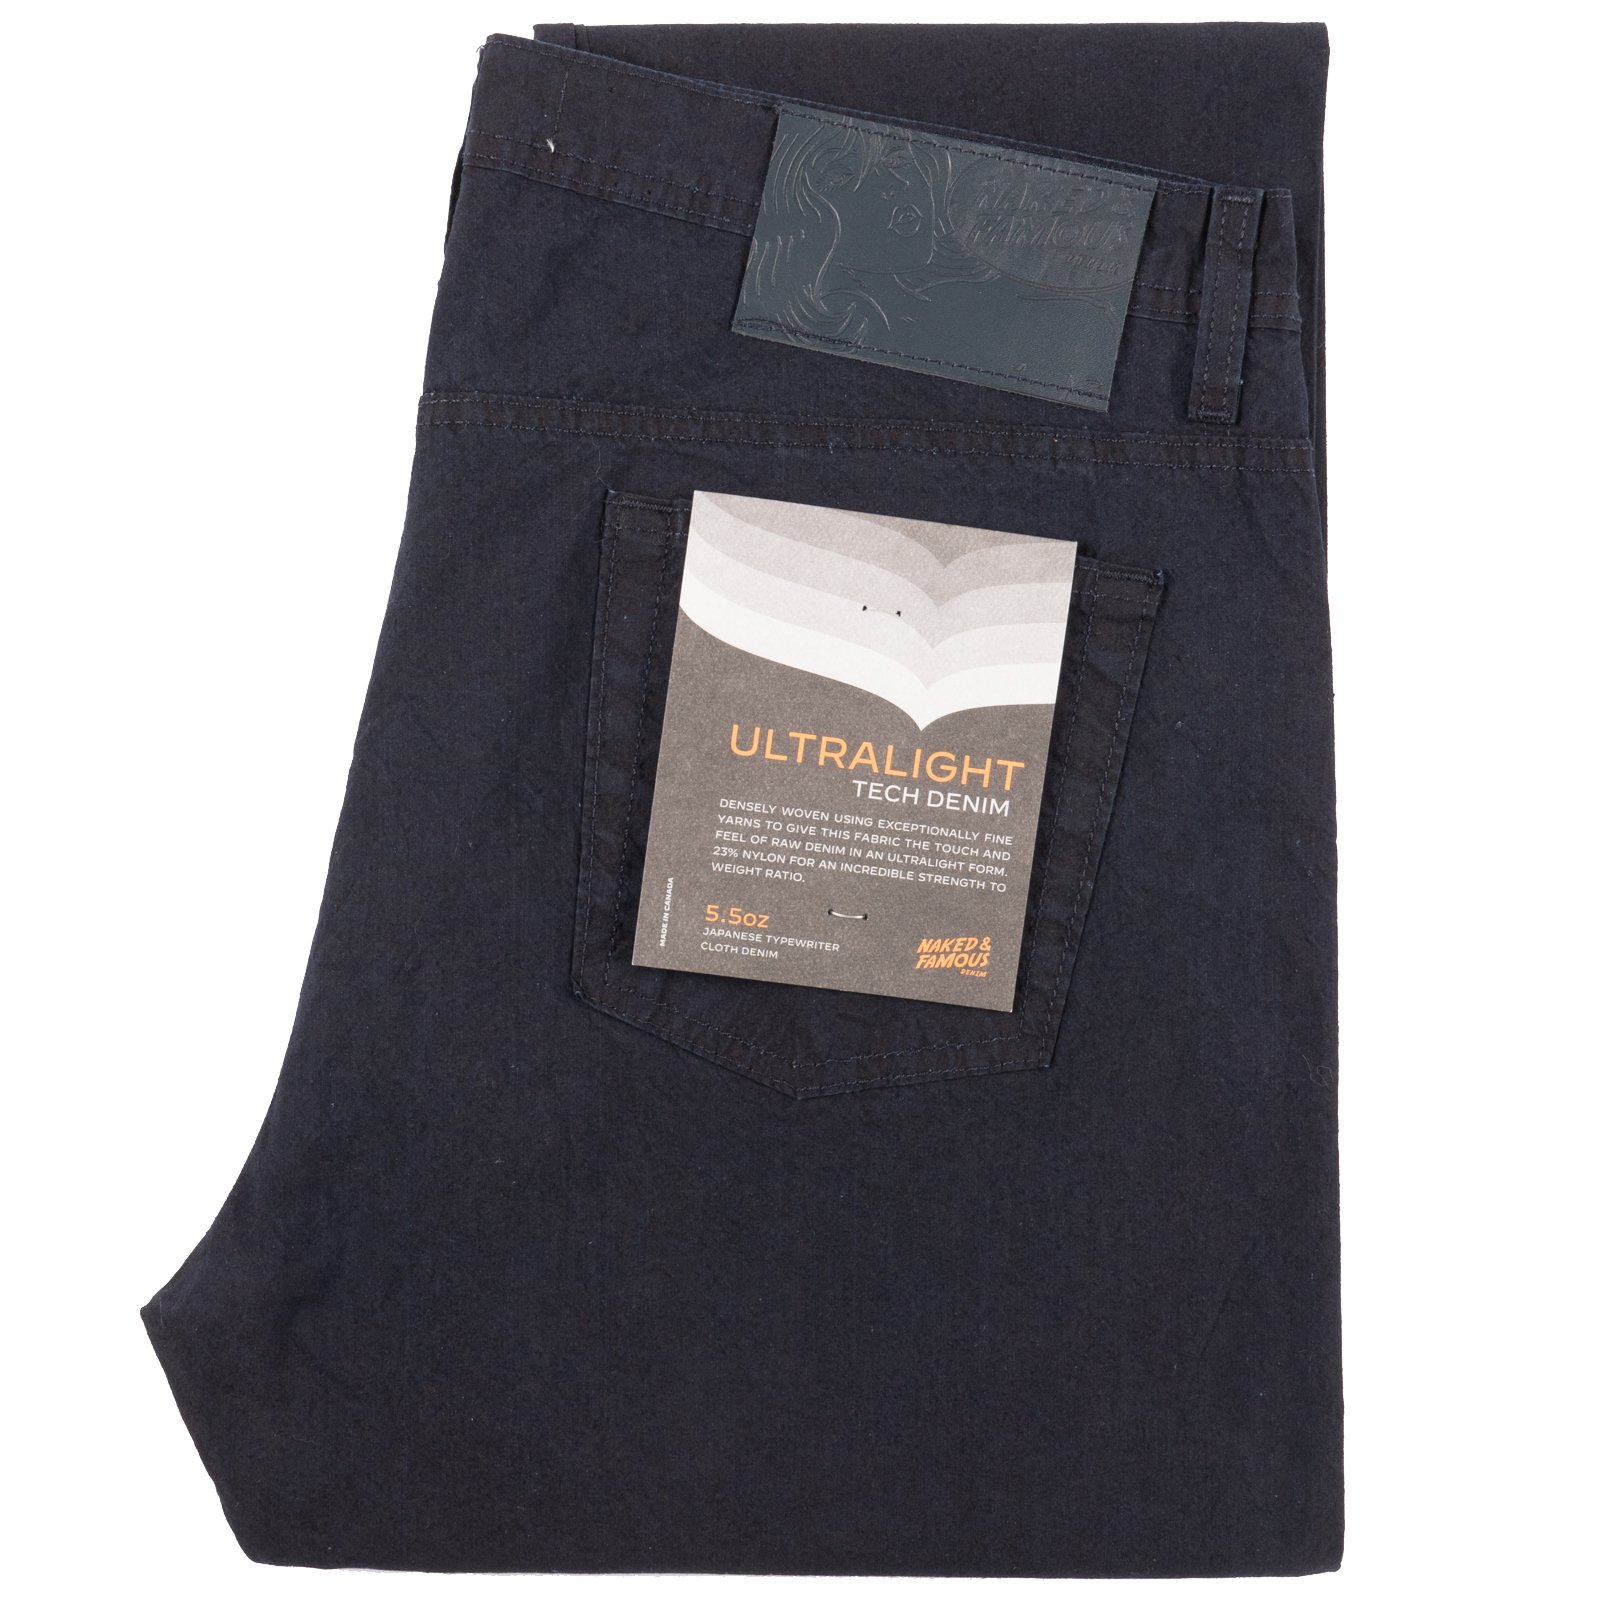  Ultralight Tech Denim jeans - folded 